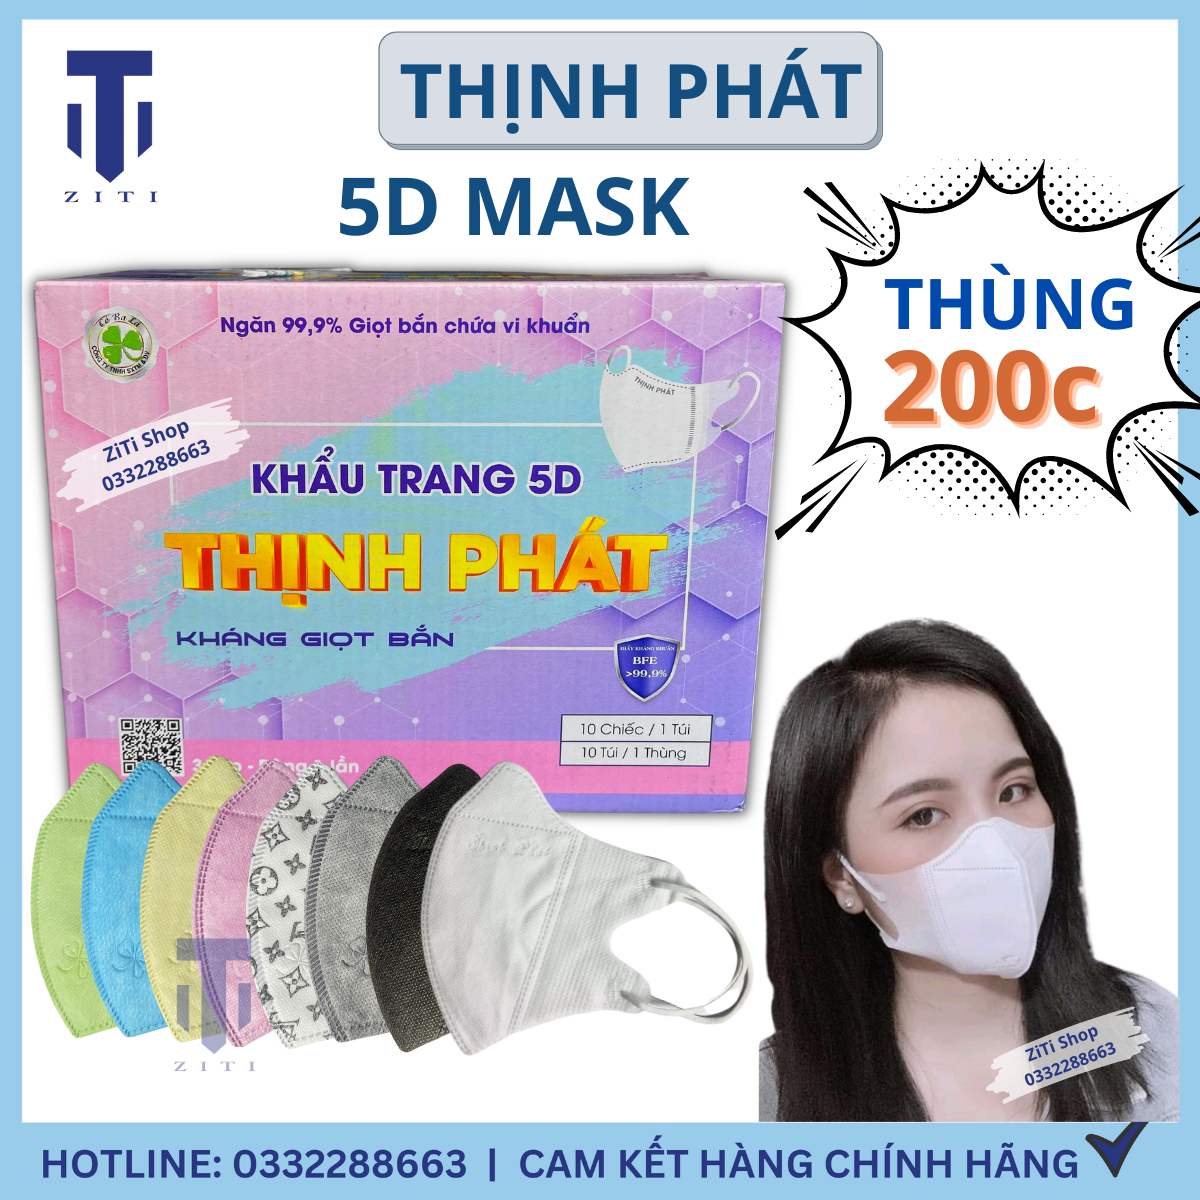 Thùng Khẩu Trang 200 Chiếc Thịnh Phát 5D Mask Hàng Chuẩn Túi Zip Chính Hãng